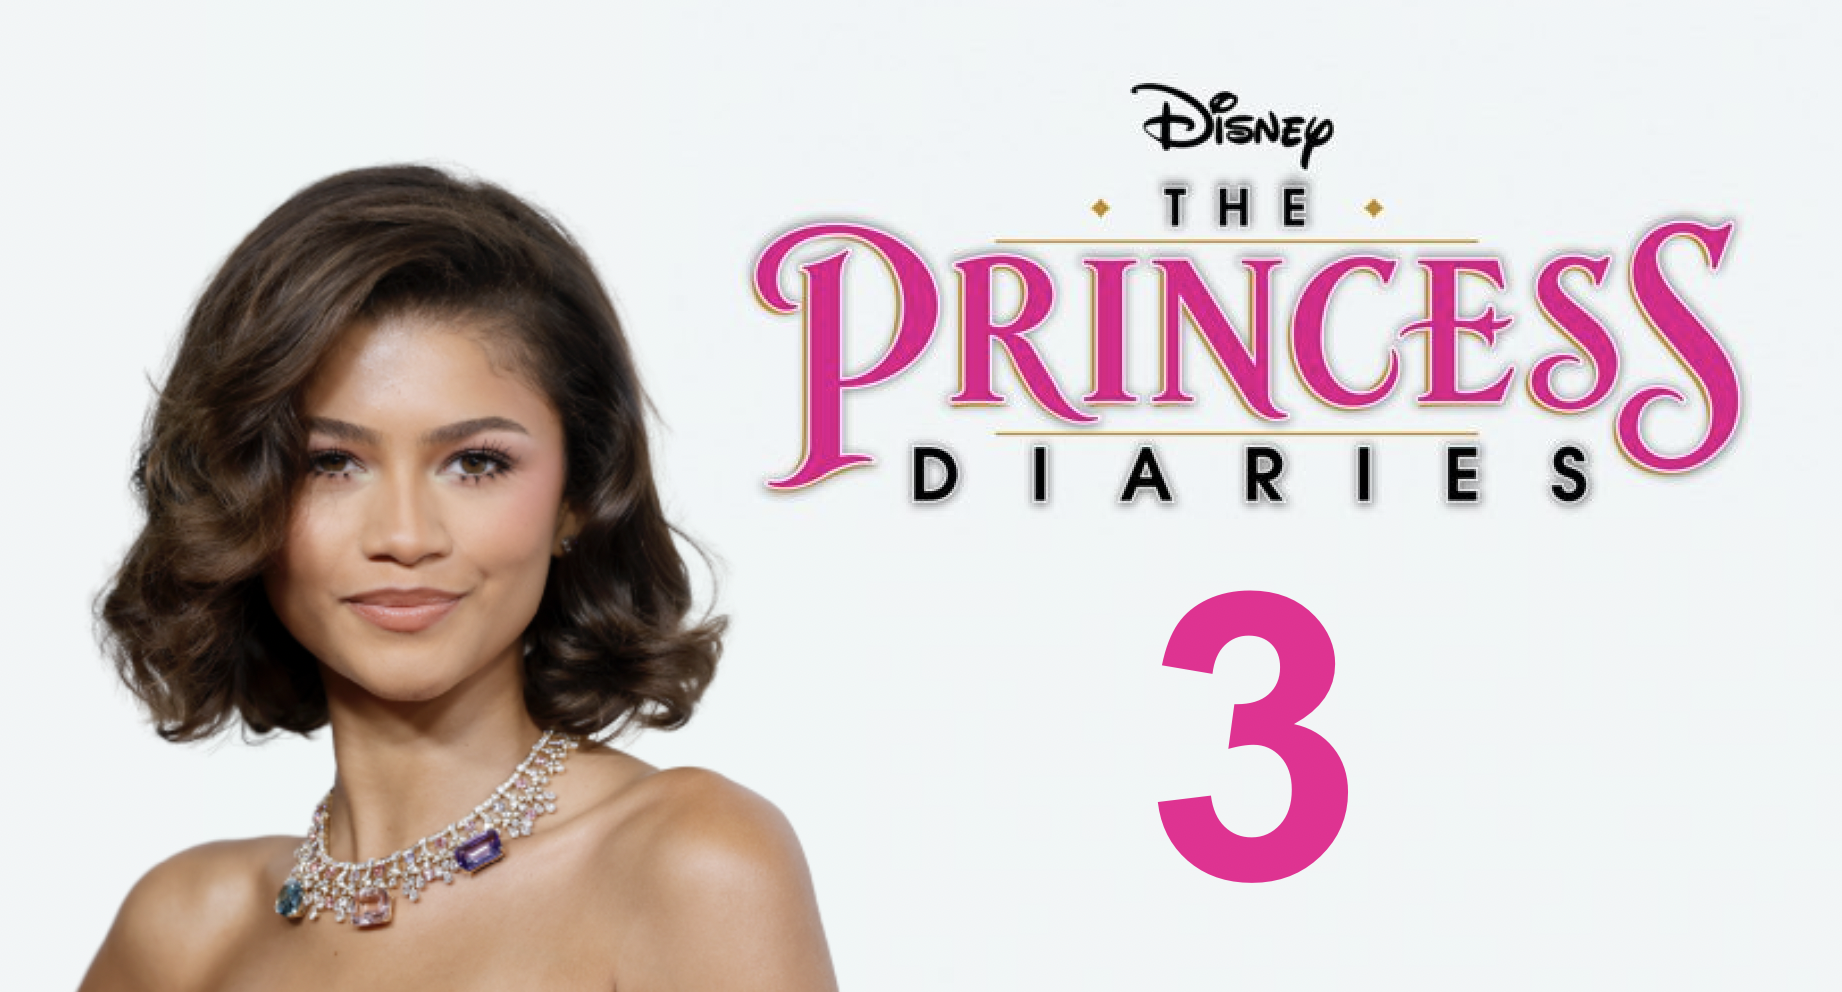 RUMOR: Disney Eyeing Zendaya For ‘Princess Diaries 3’ Role